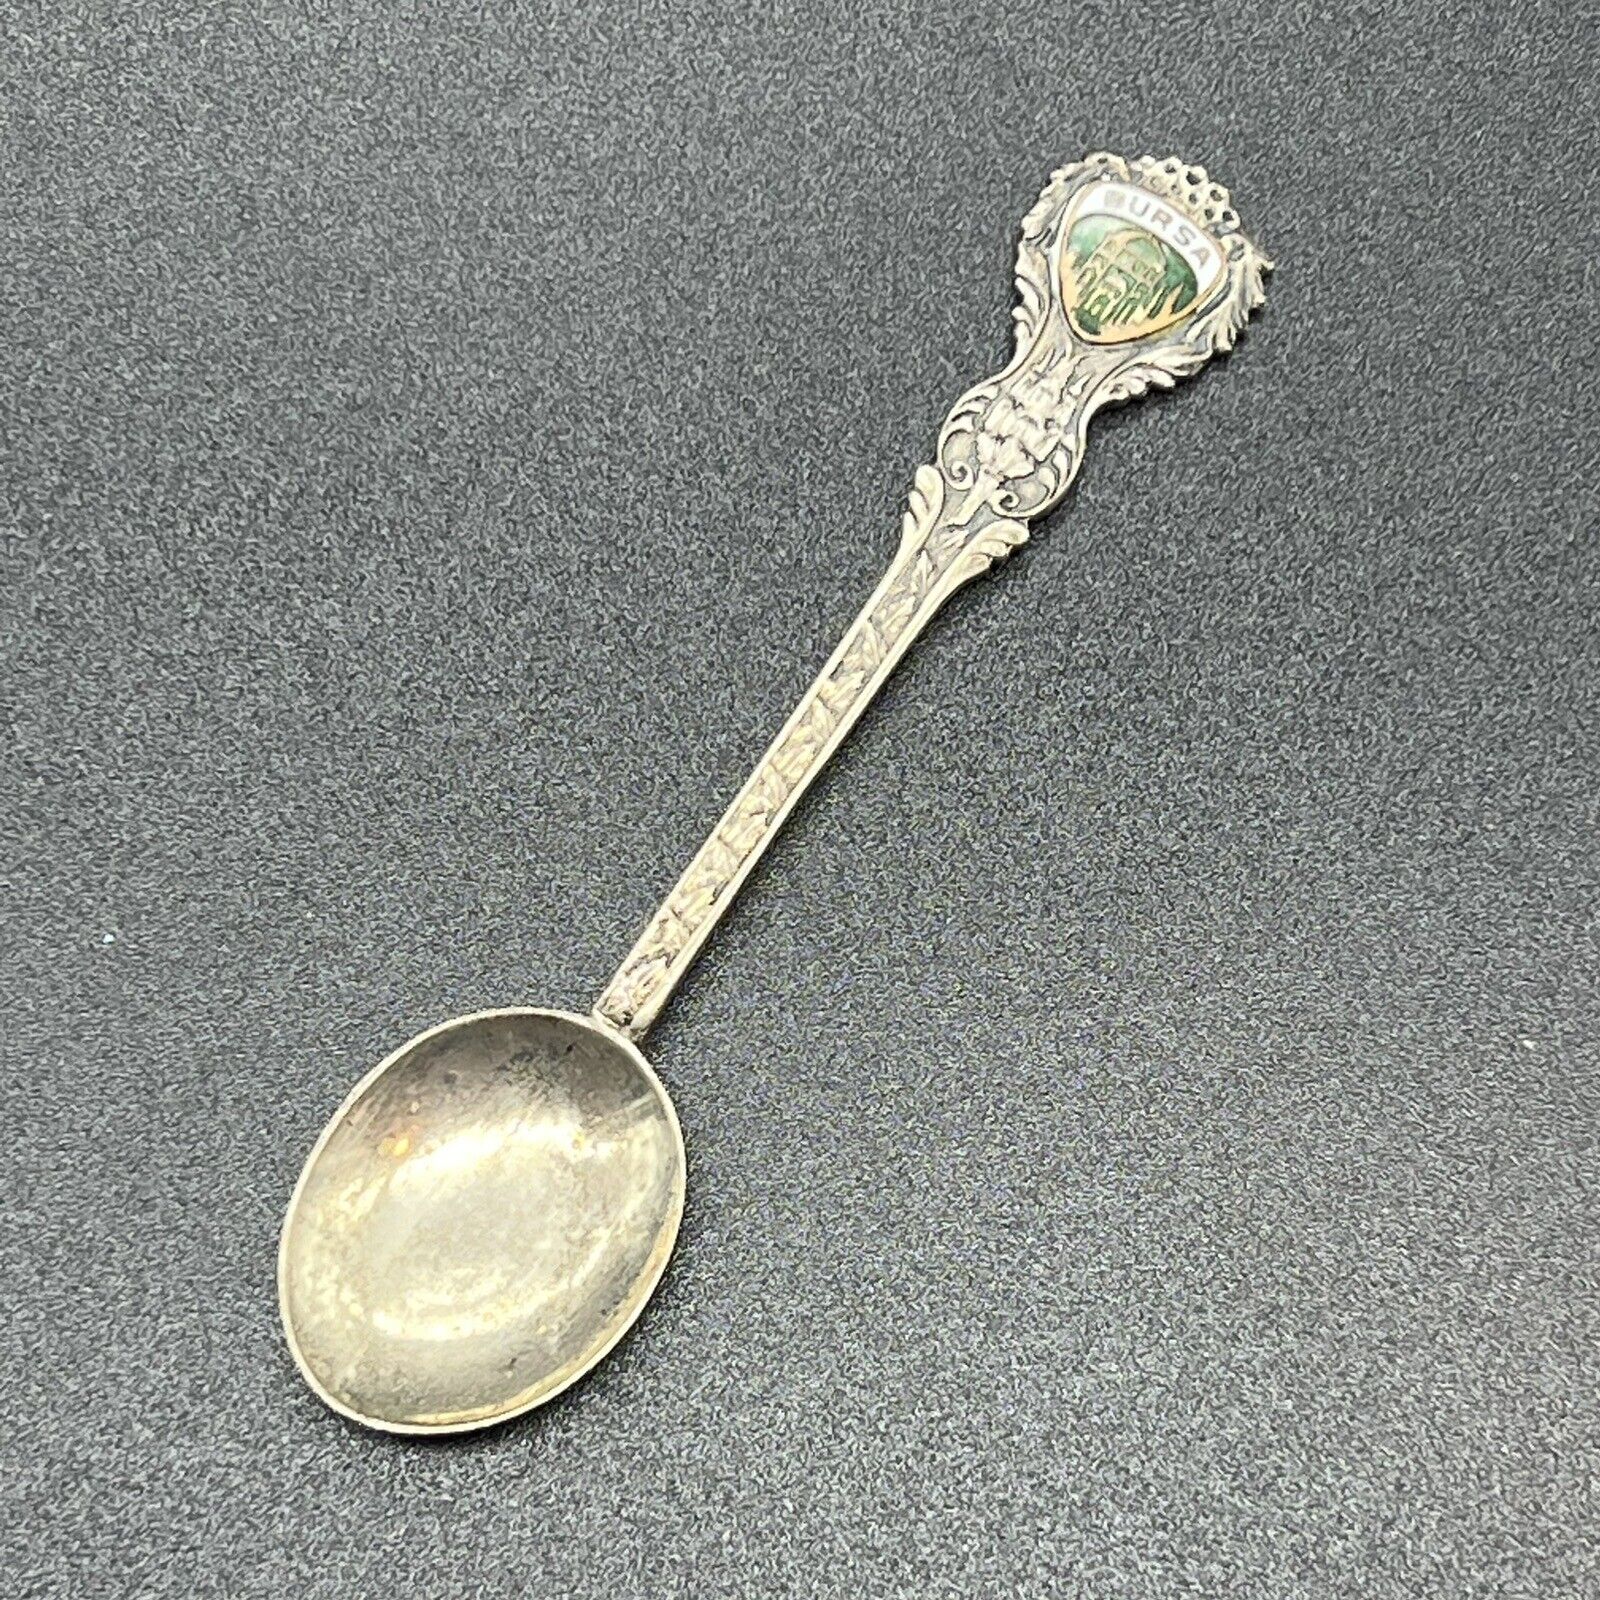 Bursa Turkey Collectible Spoon very rare